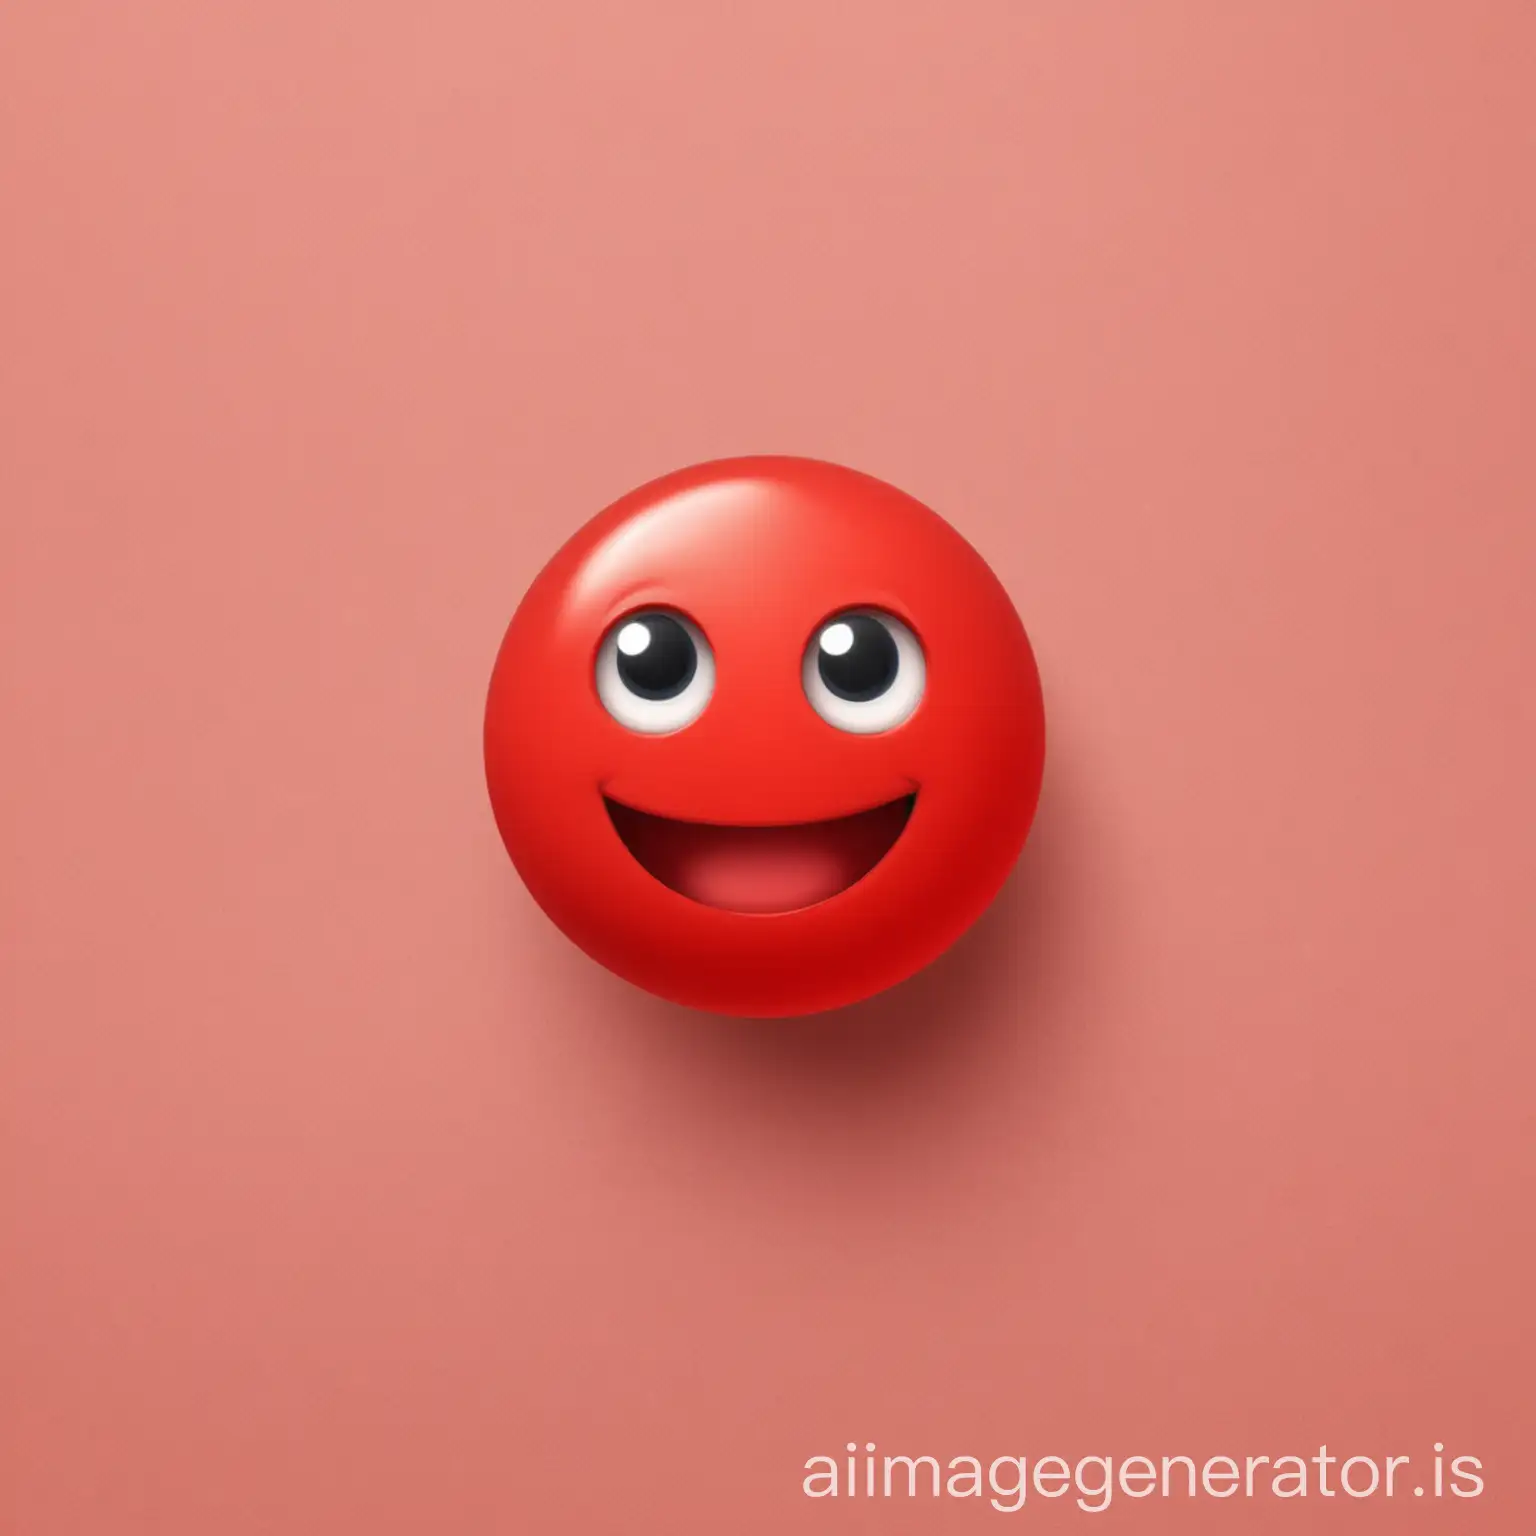 Hi emoji in red